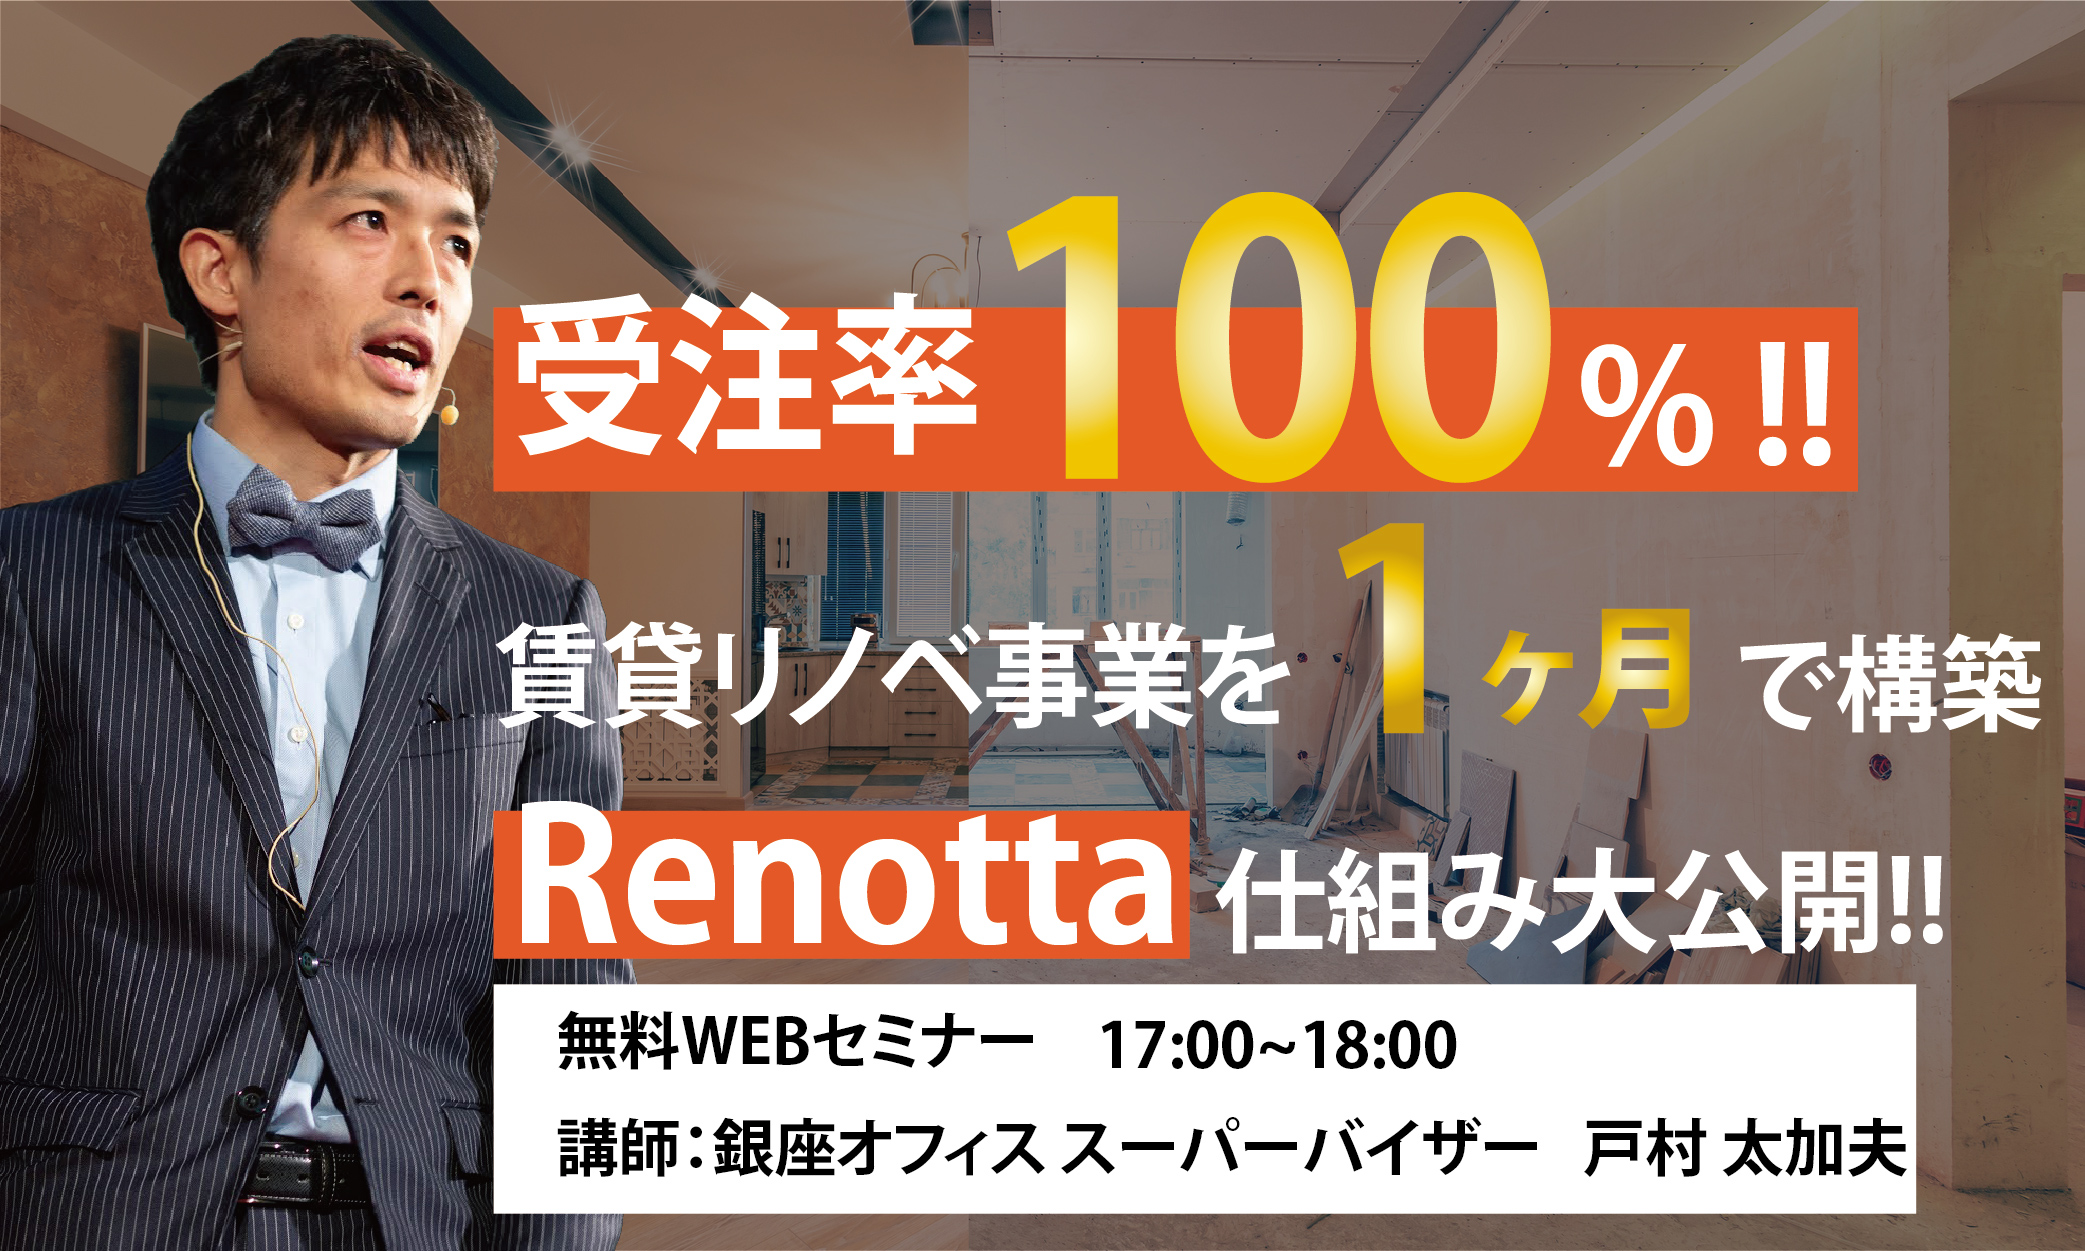 9/28(月)TATSUJINテック活用セミナー 【受注率100%の賃貸リノベ事業を1ヶ月で構築した「Renotta」仕組み大公開】